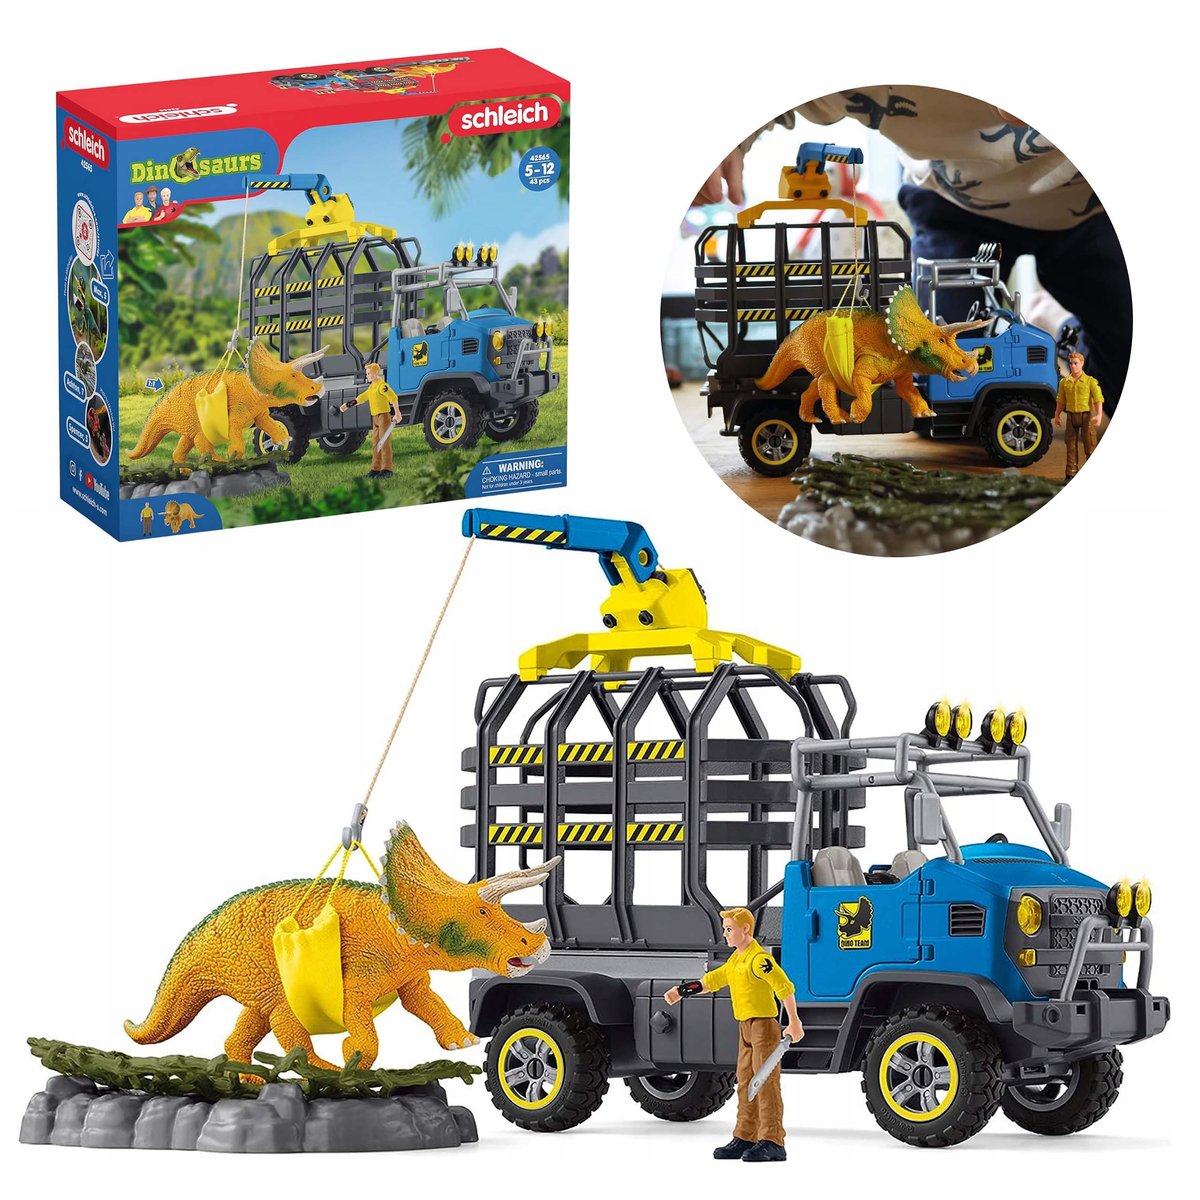 SLH42565 Schleich Dinosaurs - Misja transportu dinozaurów, figurki dla dzieci 4+